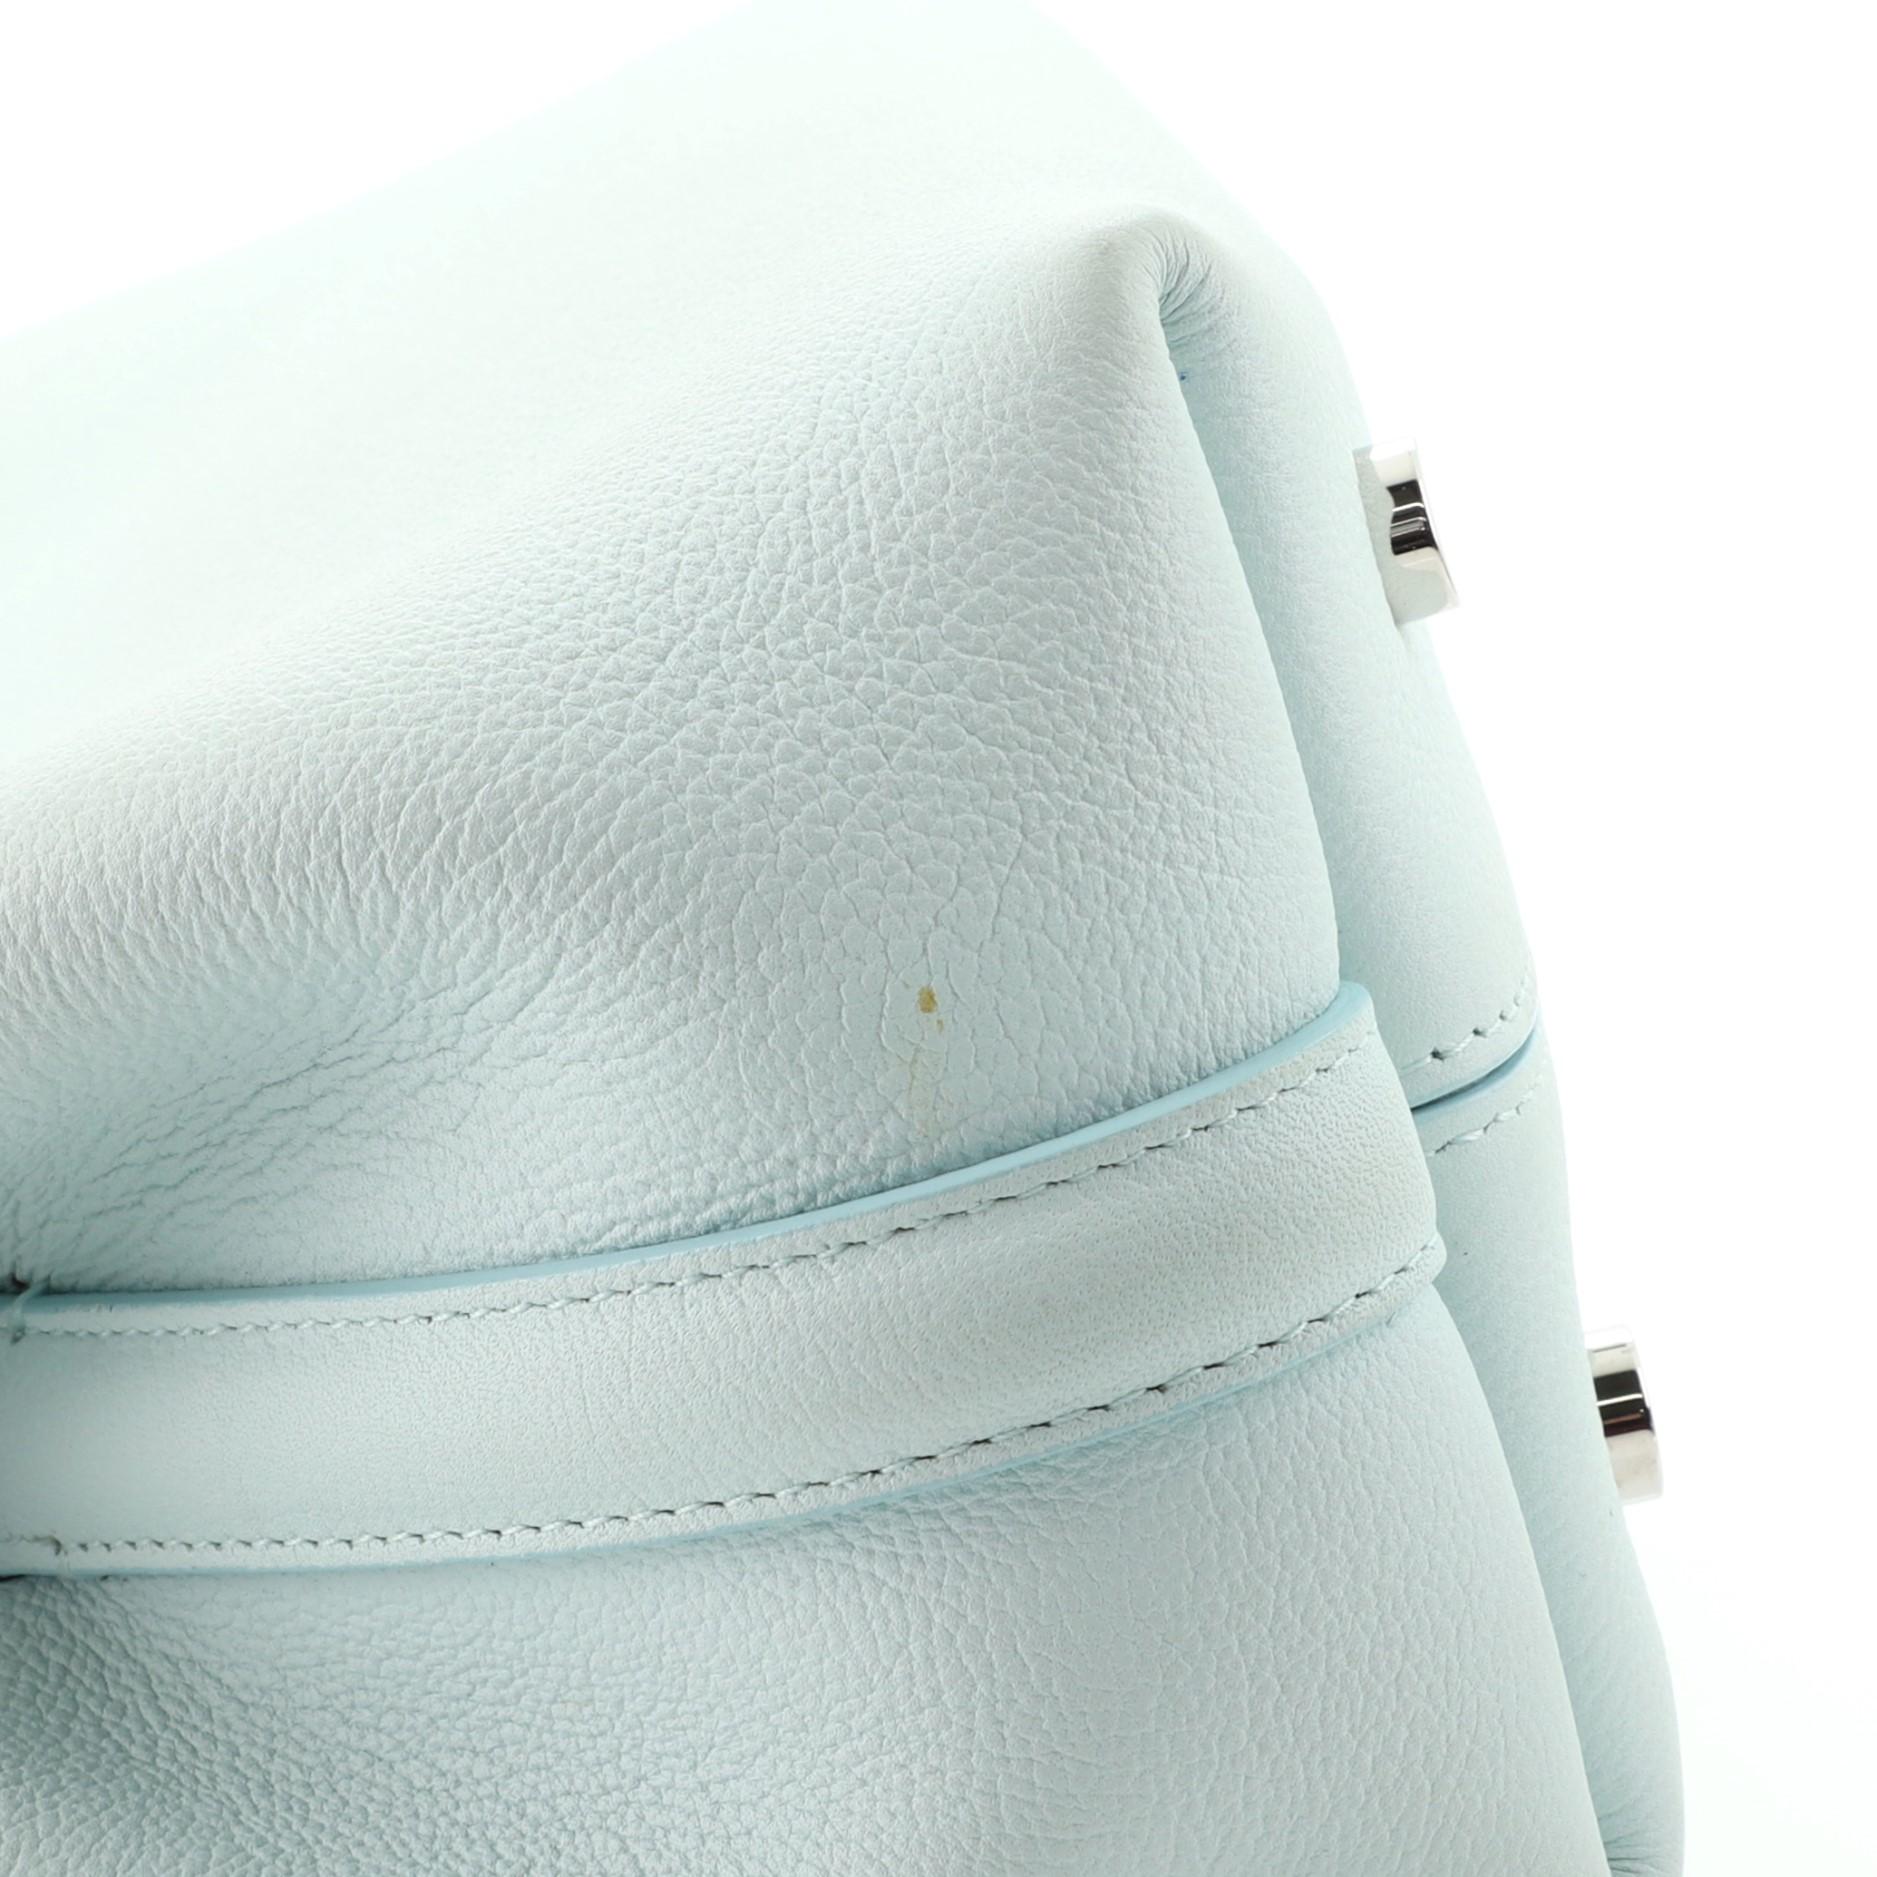 Christian Dior Blossom Handbag Leather Small 2